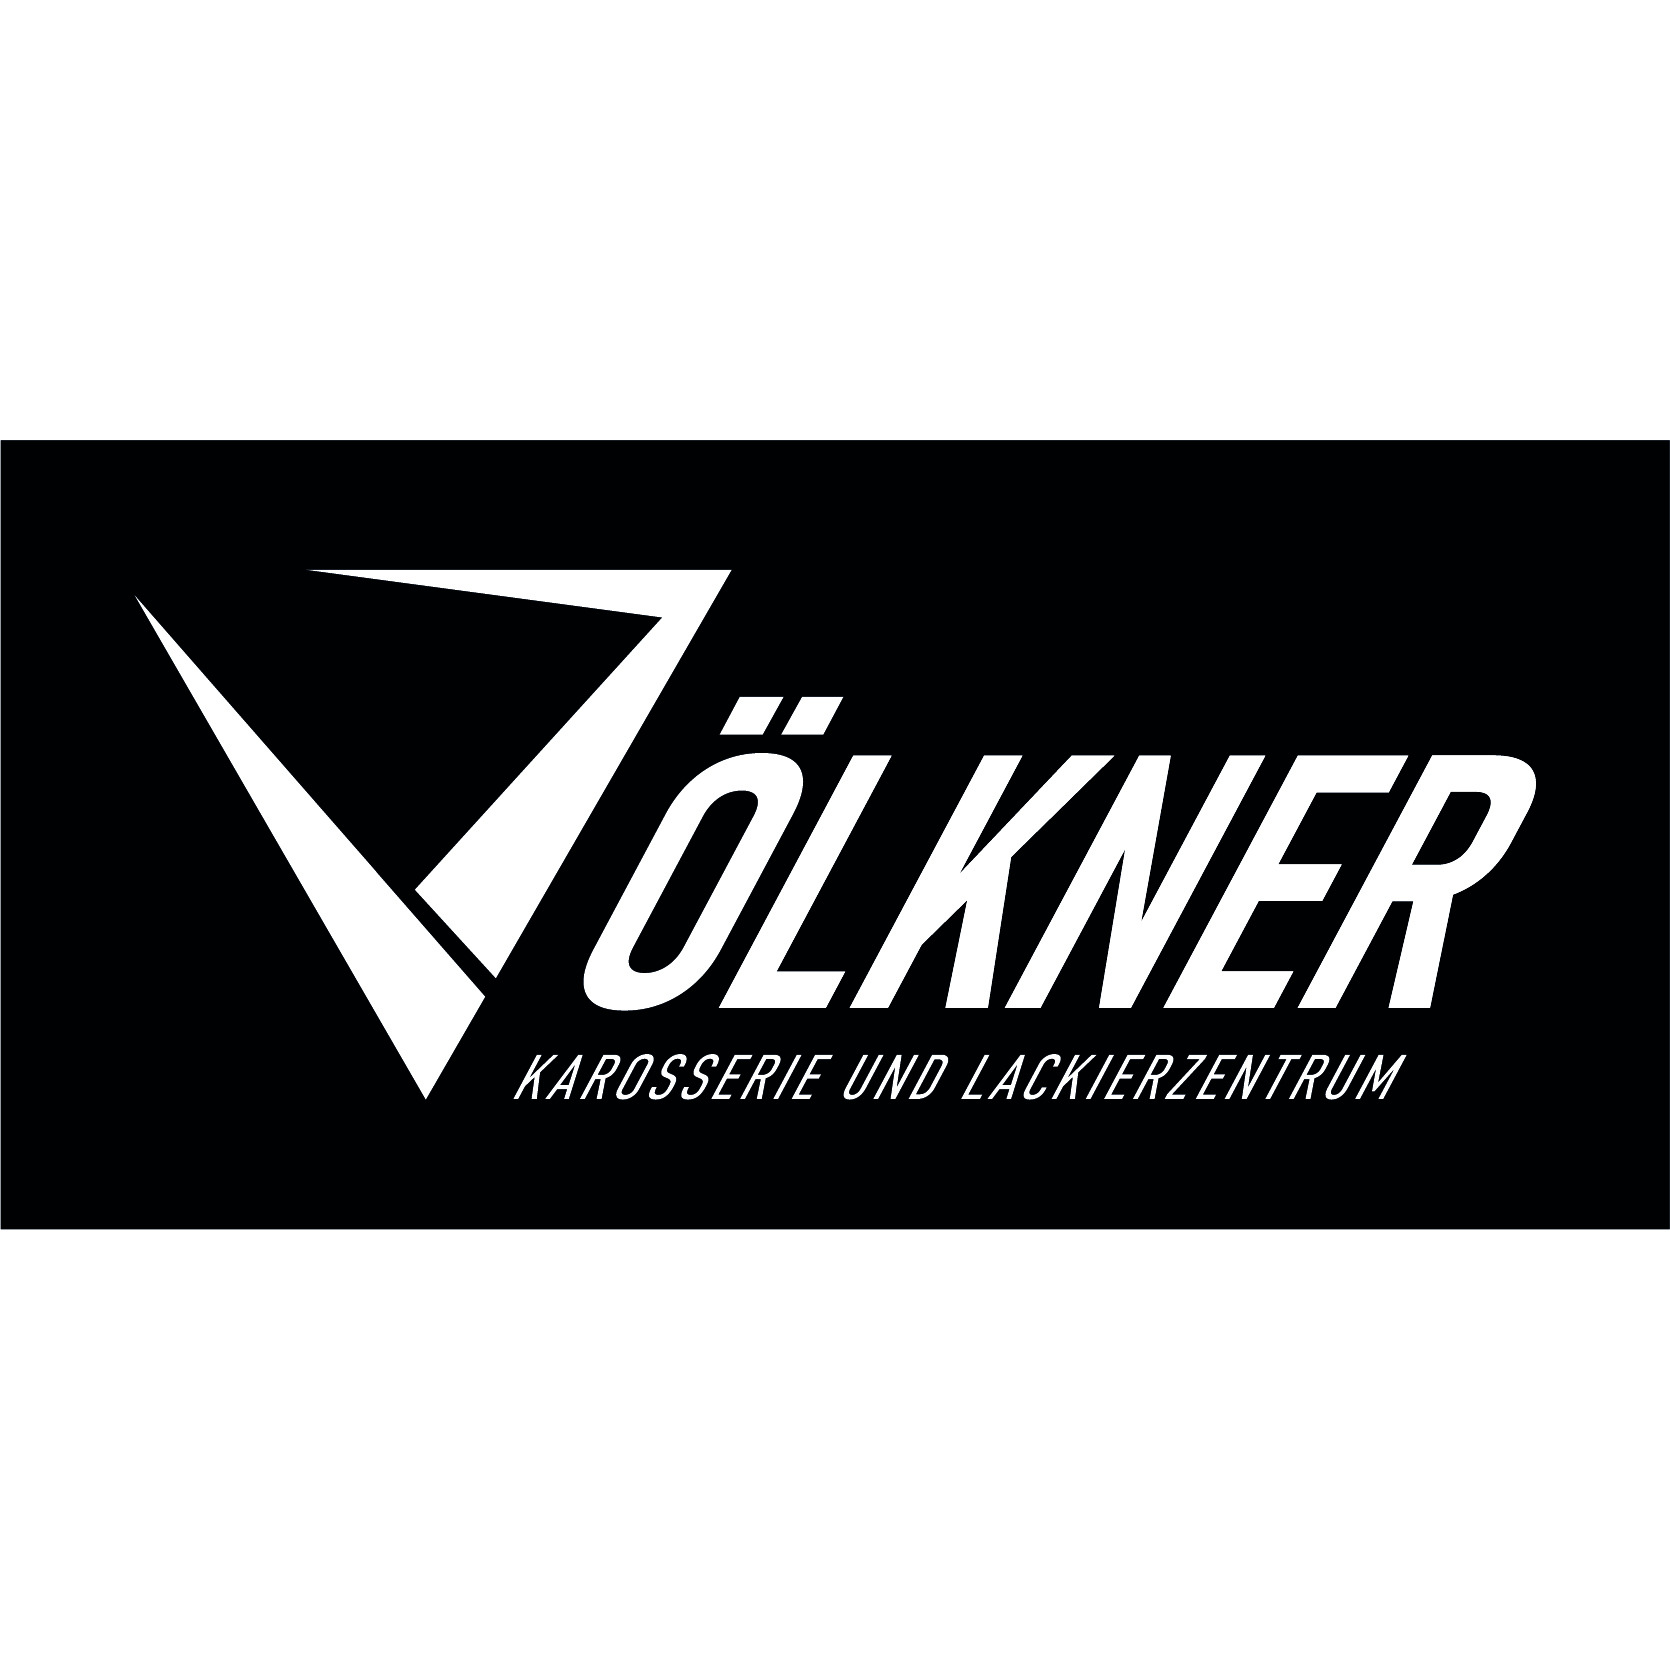 Völkner Karosserie und Lackierzentrum Logo